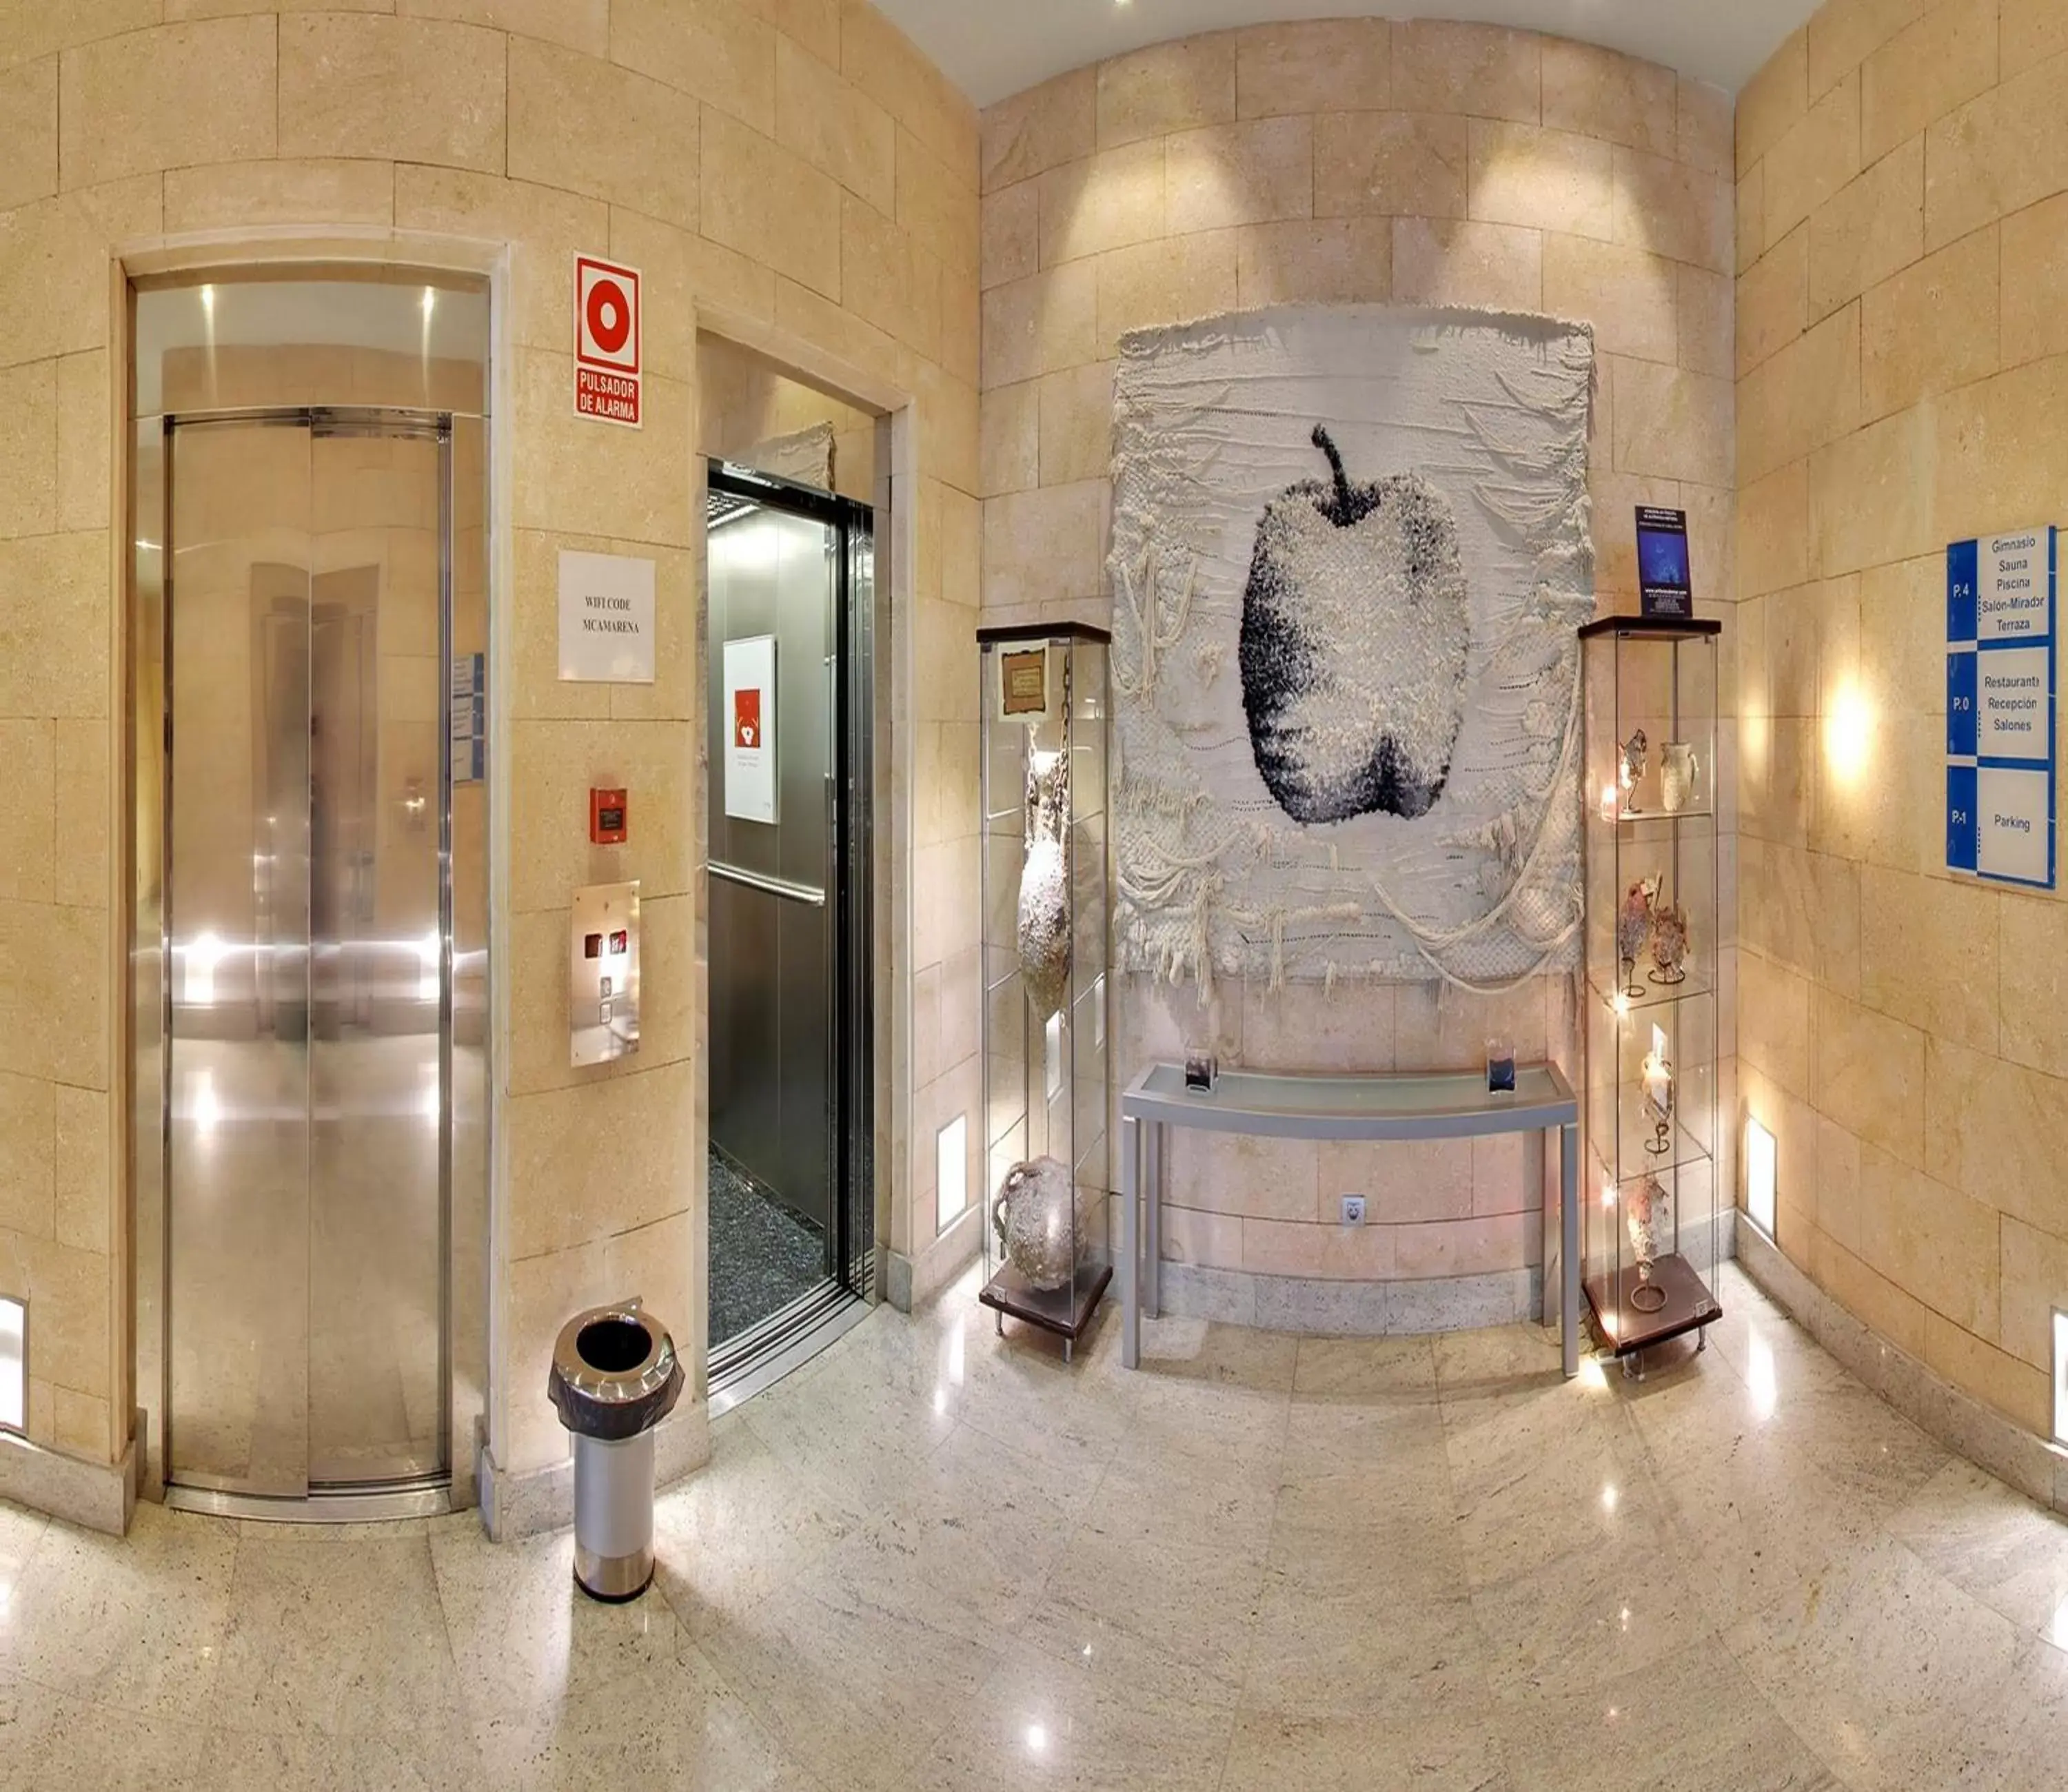 Lobby or reception, Bathroom in Hotel Mas Camarena